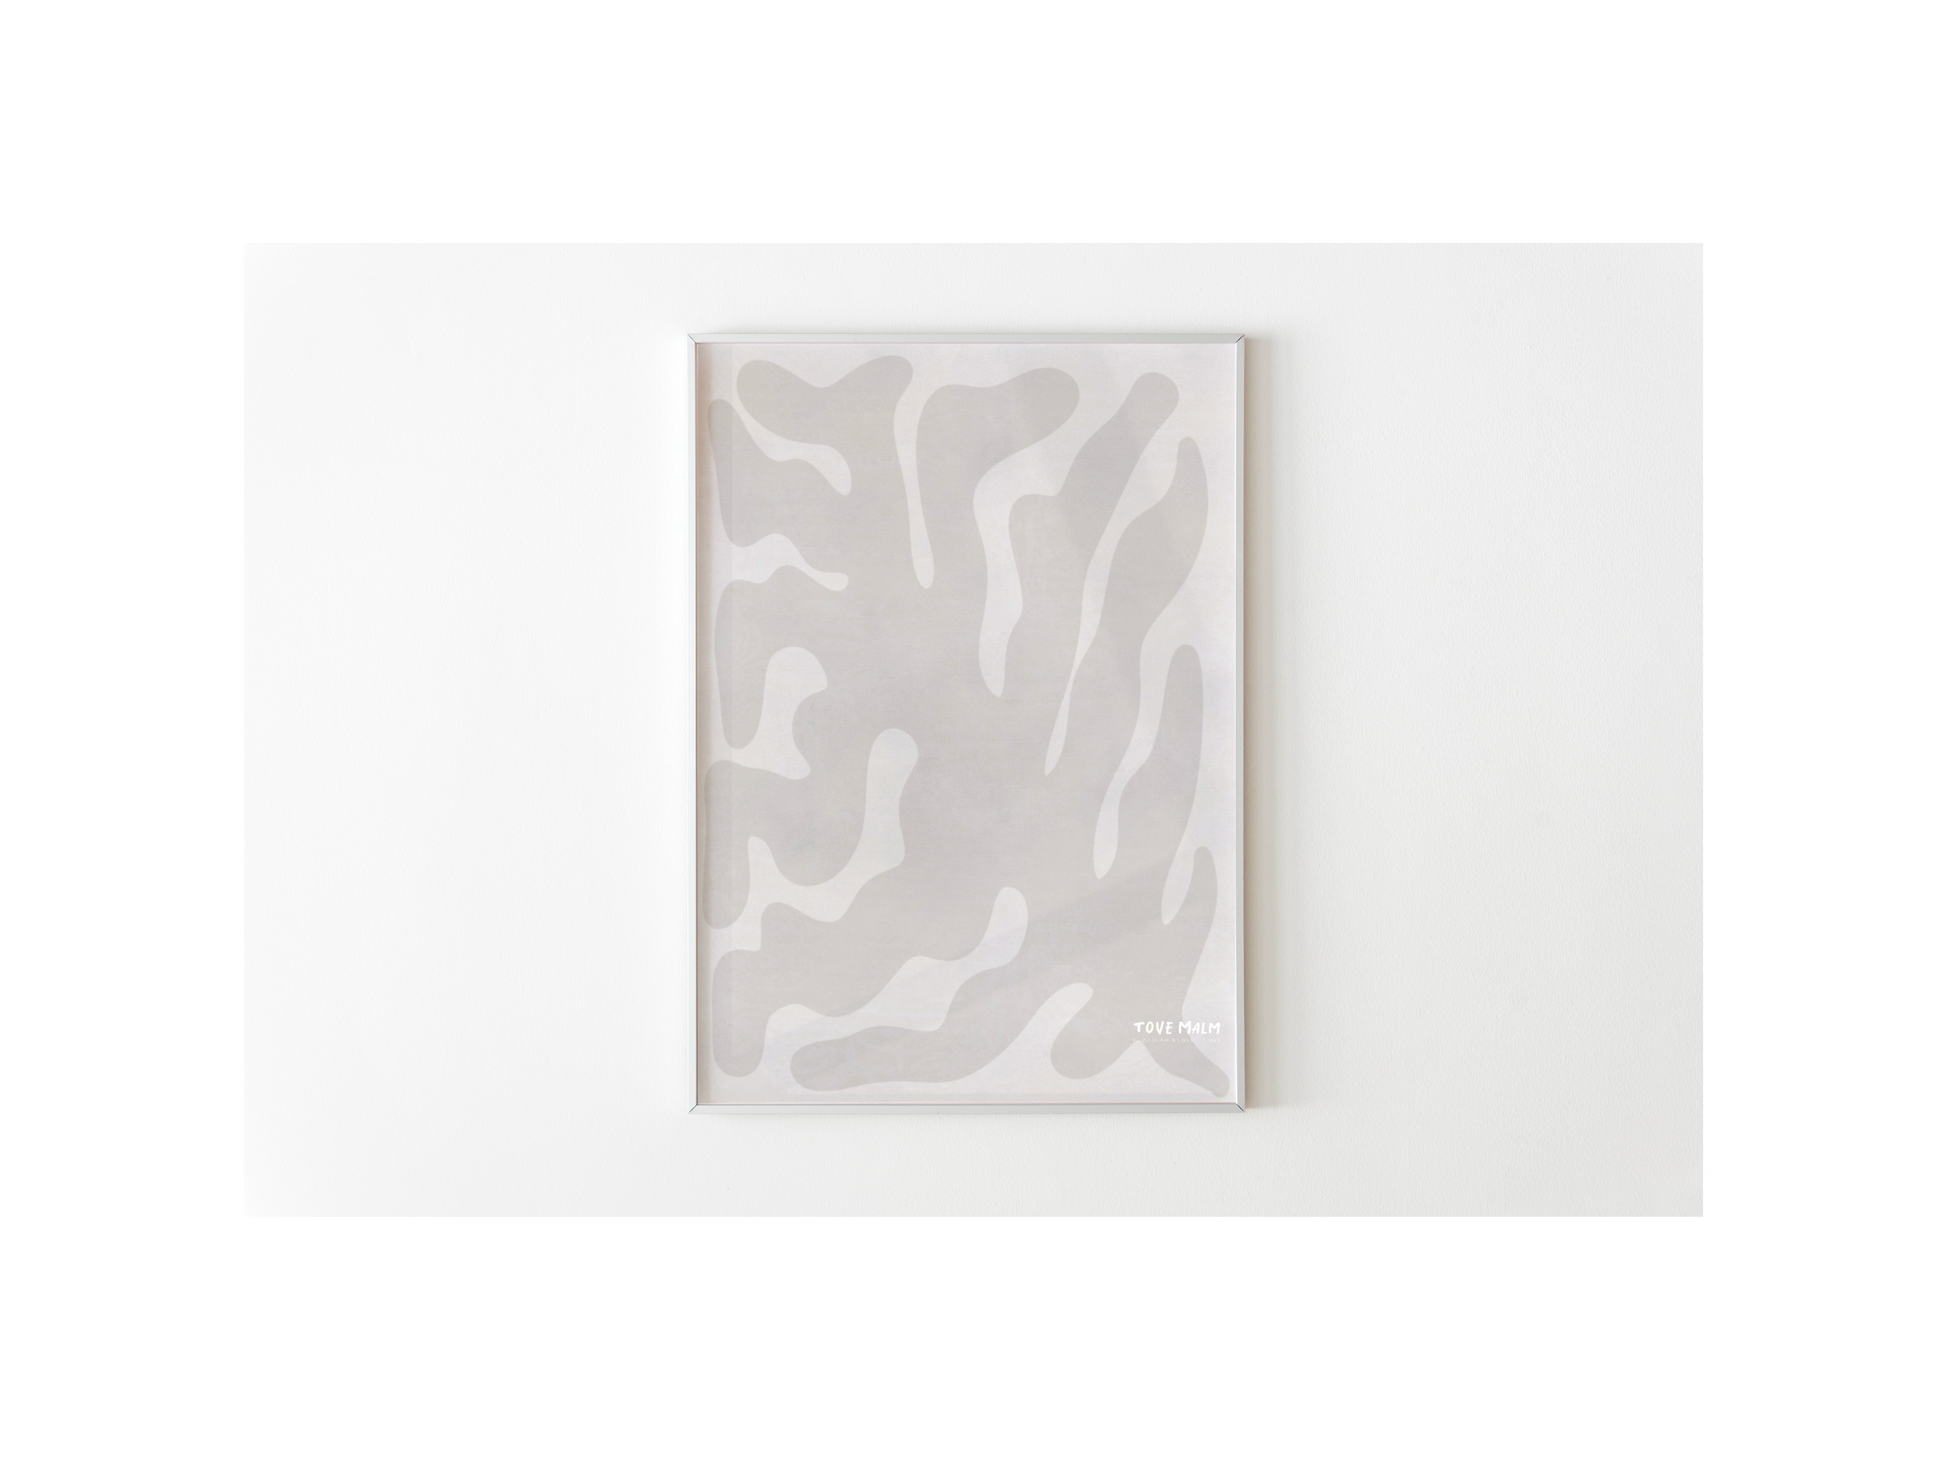 Låt dig inspireras av denna vackra abstrakta japandi-illustration. De mjuka, neutrala tonerna i vit, beige och ljust grå skapar en känsla av lugn och harmoni. De abstrakta formerna är både eleganta och unika.